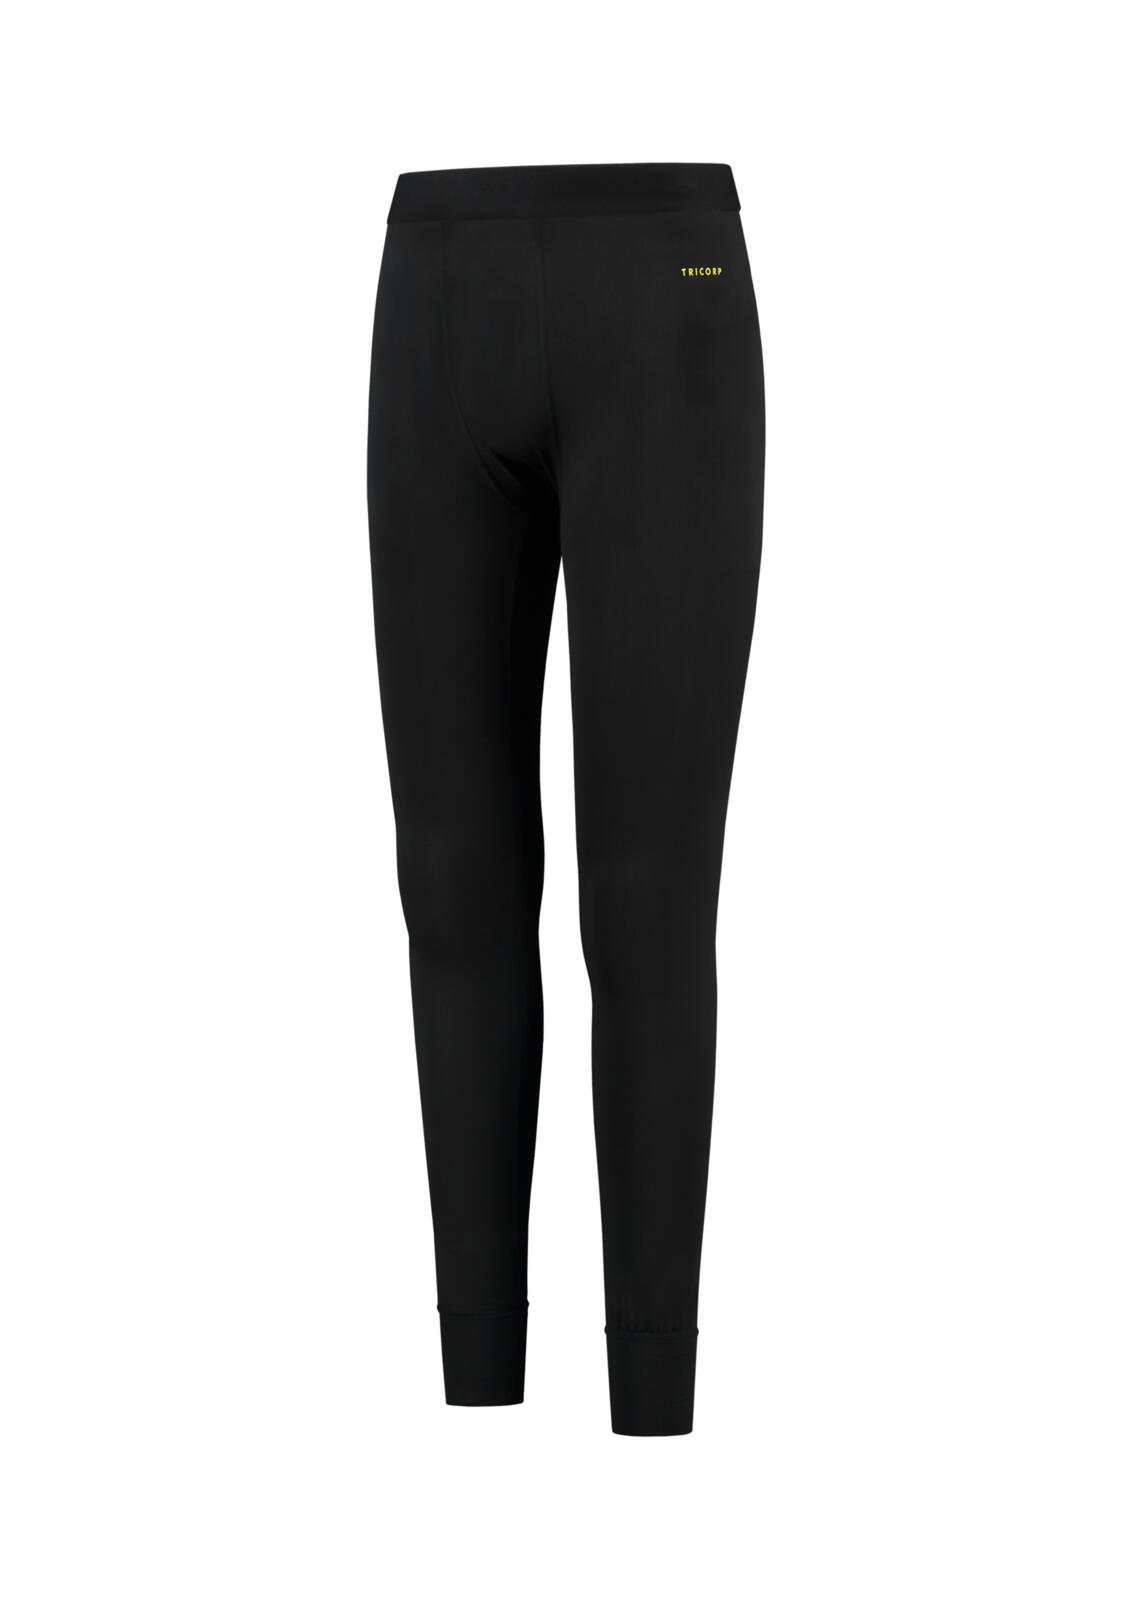 Thermal Underwear Spodní kalhoty unisex Barva: černá, Velikost: M